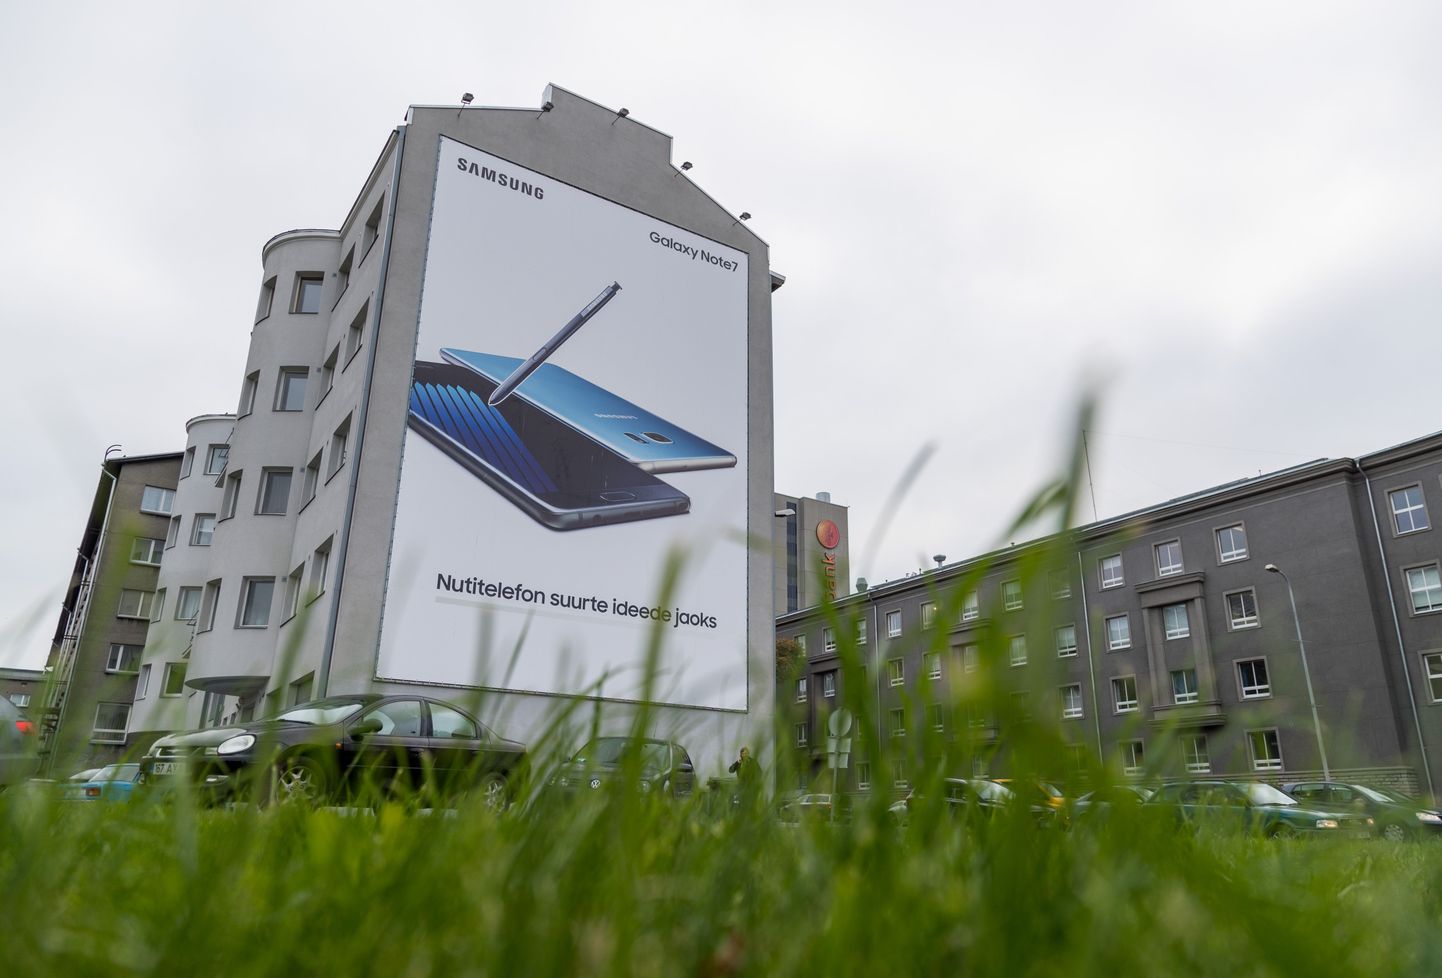 Baltikumis ei jõutud ülekuumenemis- ja süttimisprobleemidega Samsung Galaxy Note7 nutitelefone palju müüa. Foto on illustreeriv.